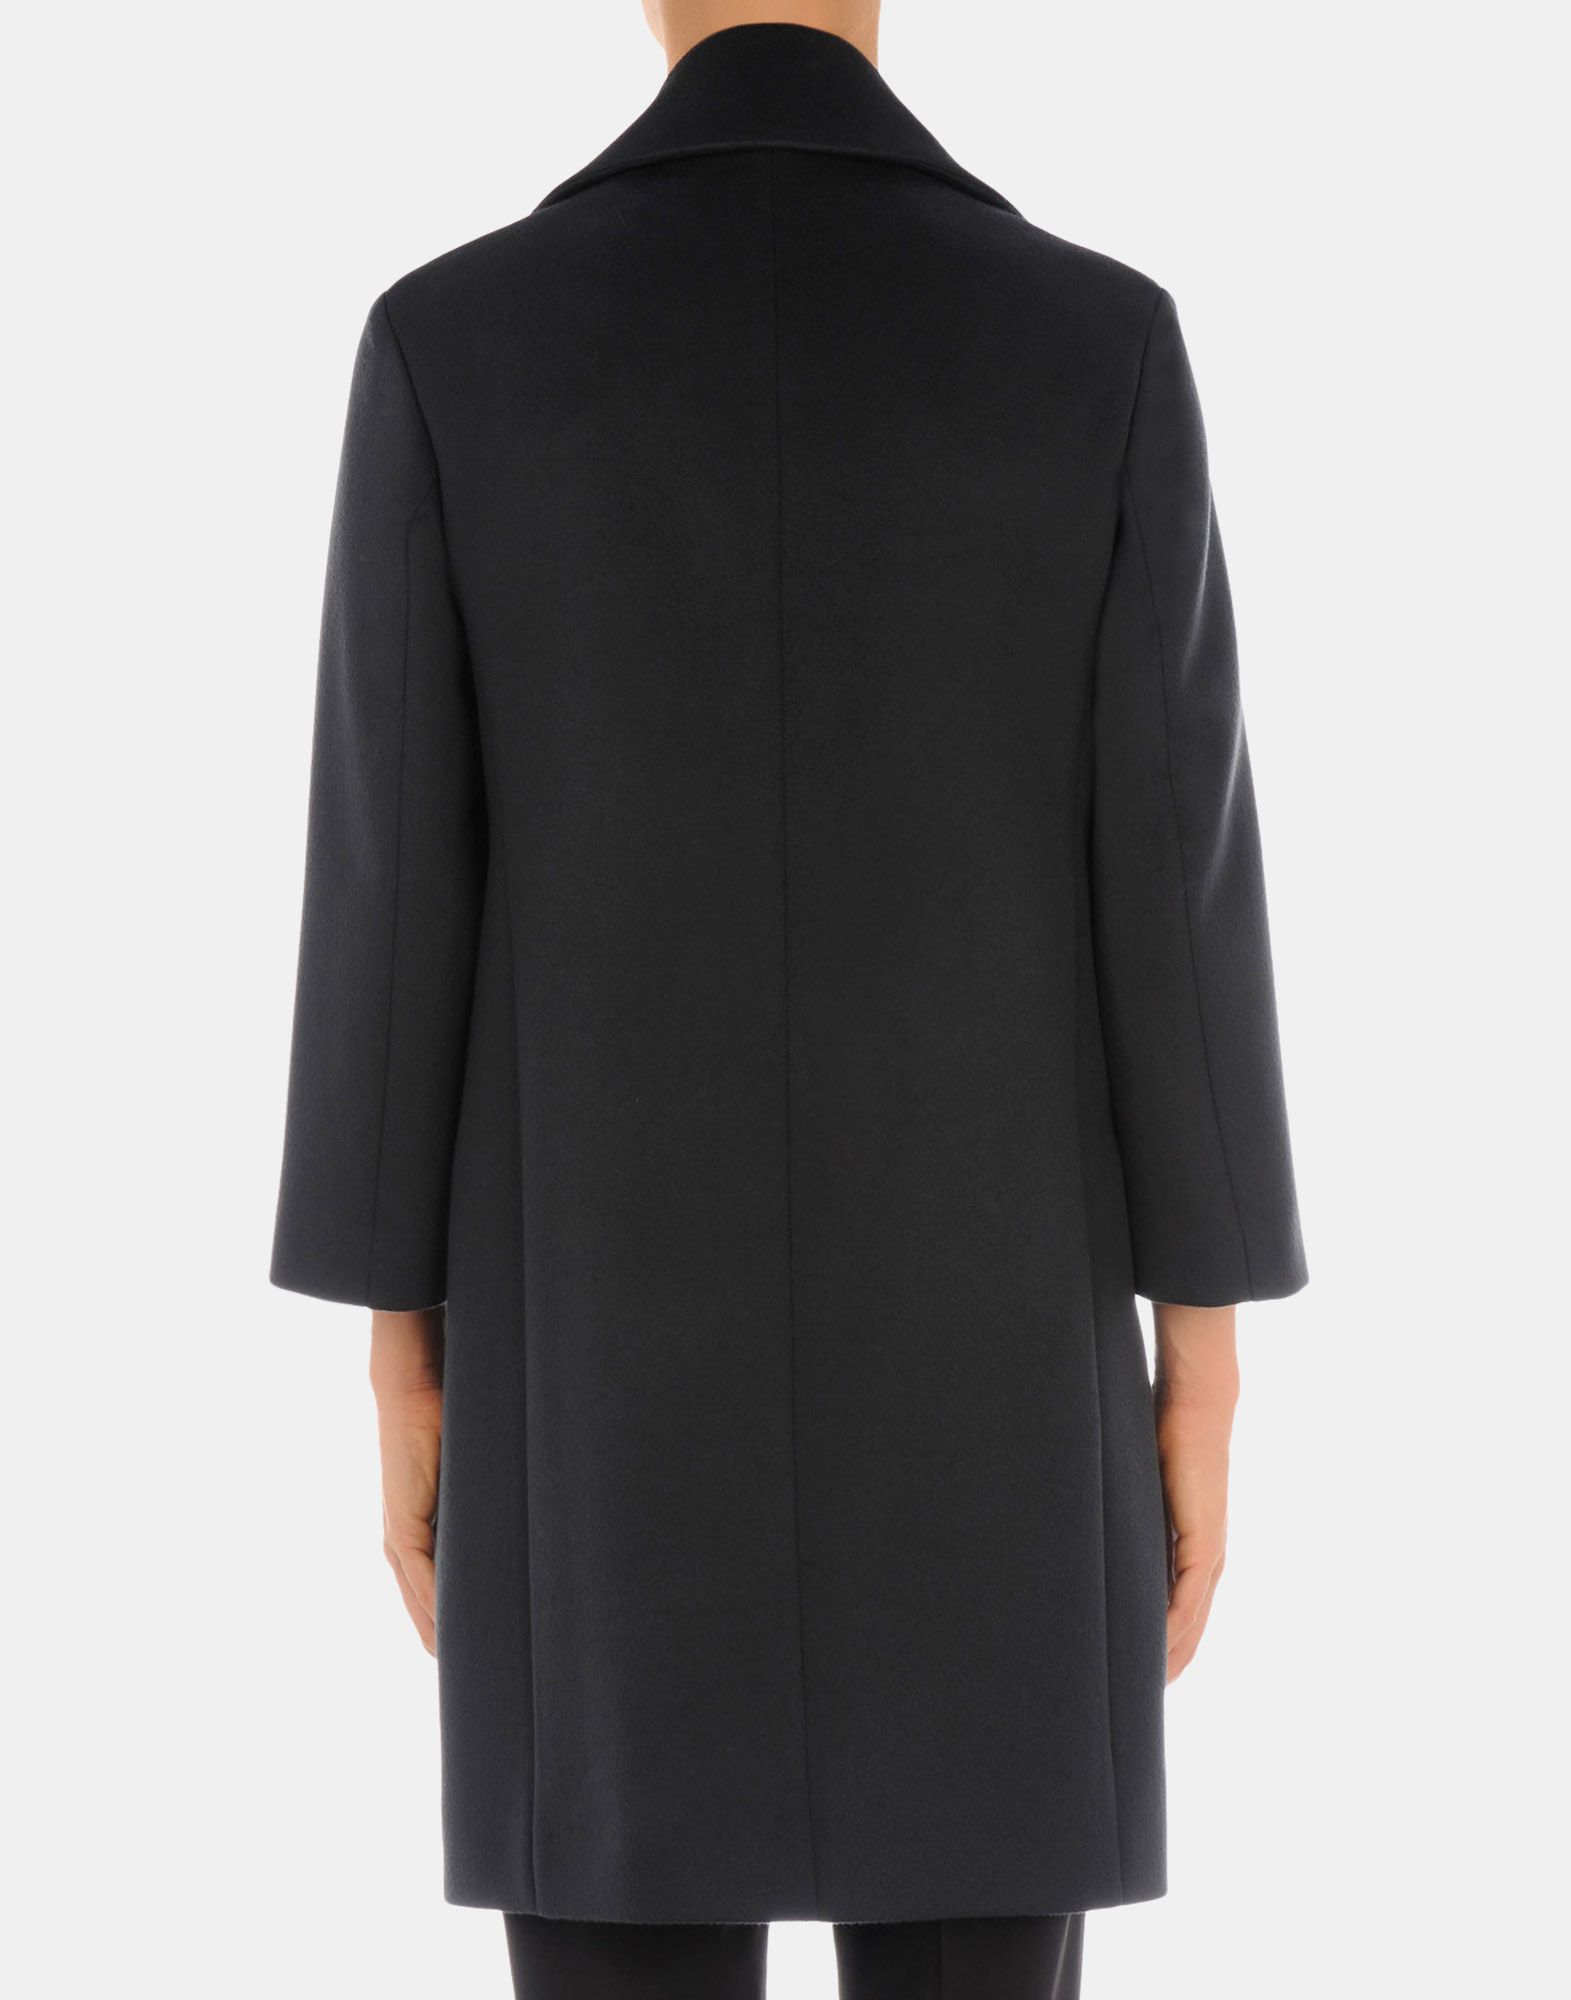 Coat Women - Coats Women on Jil Sander Online Store